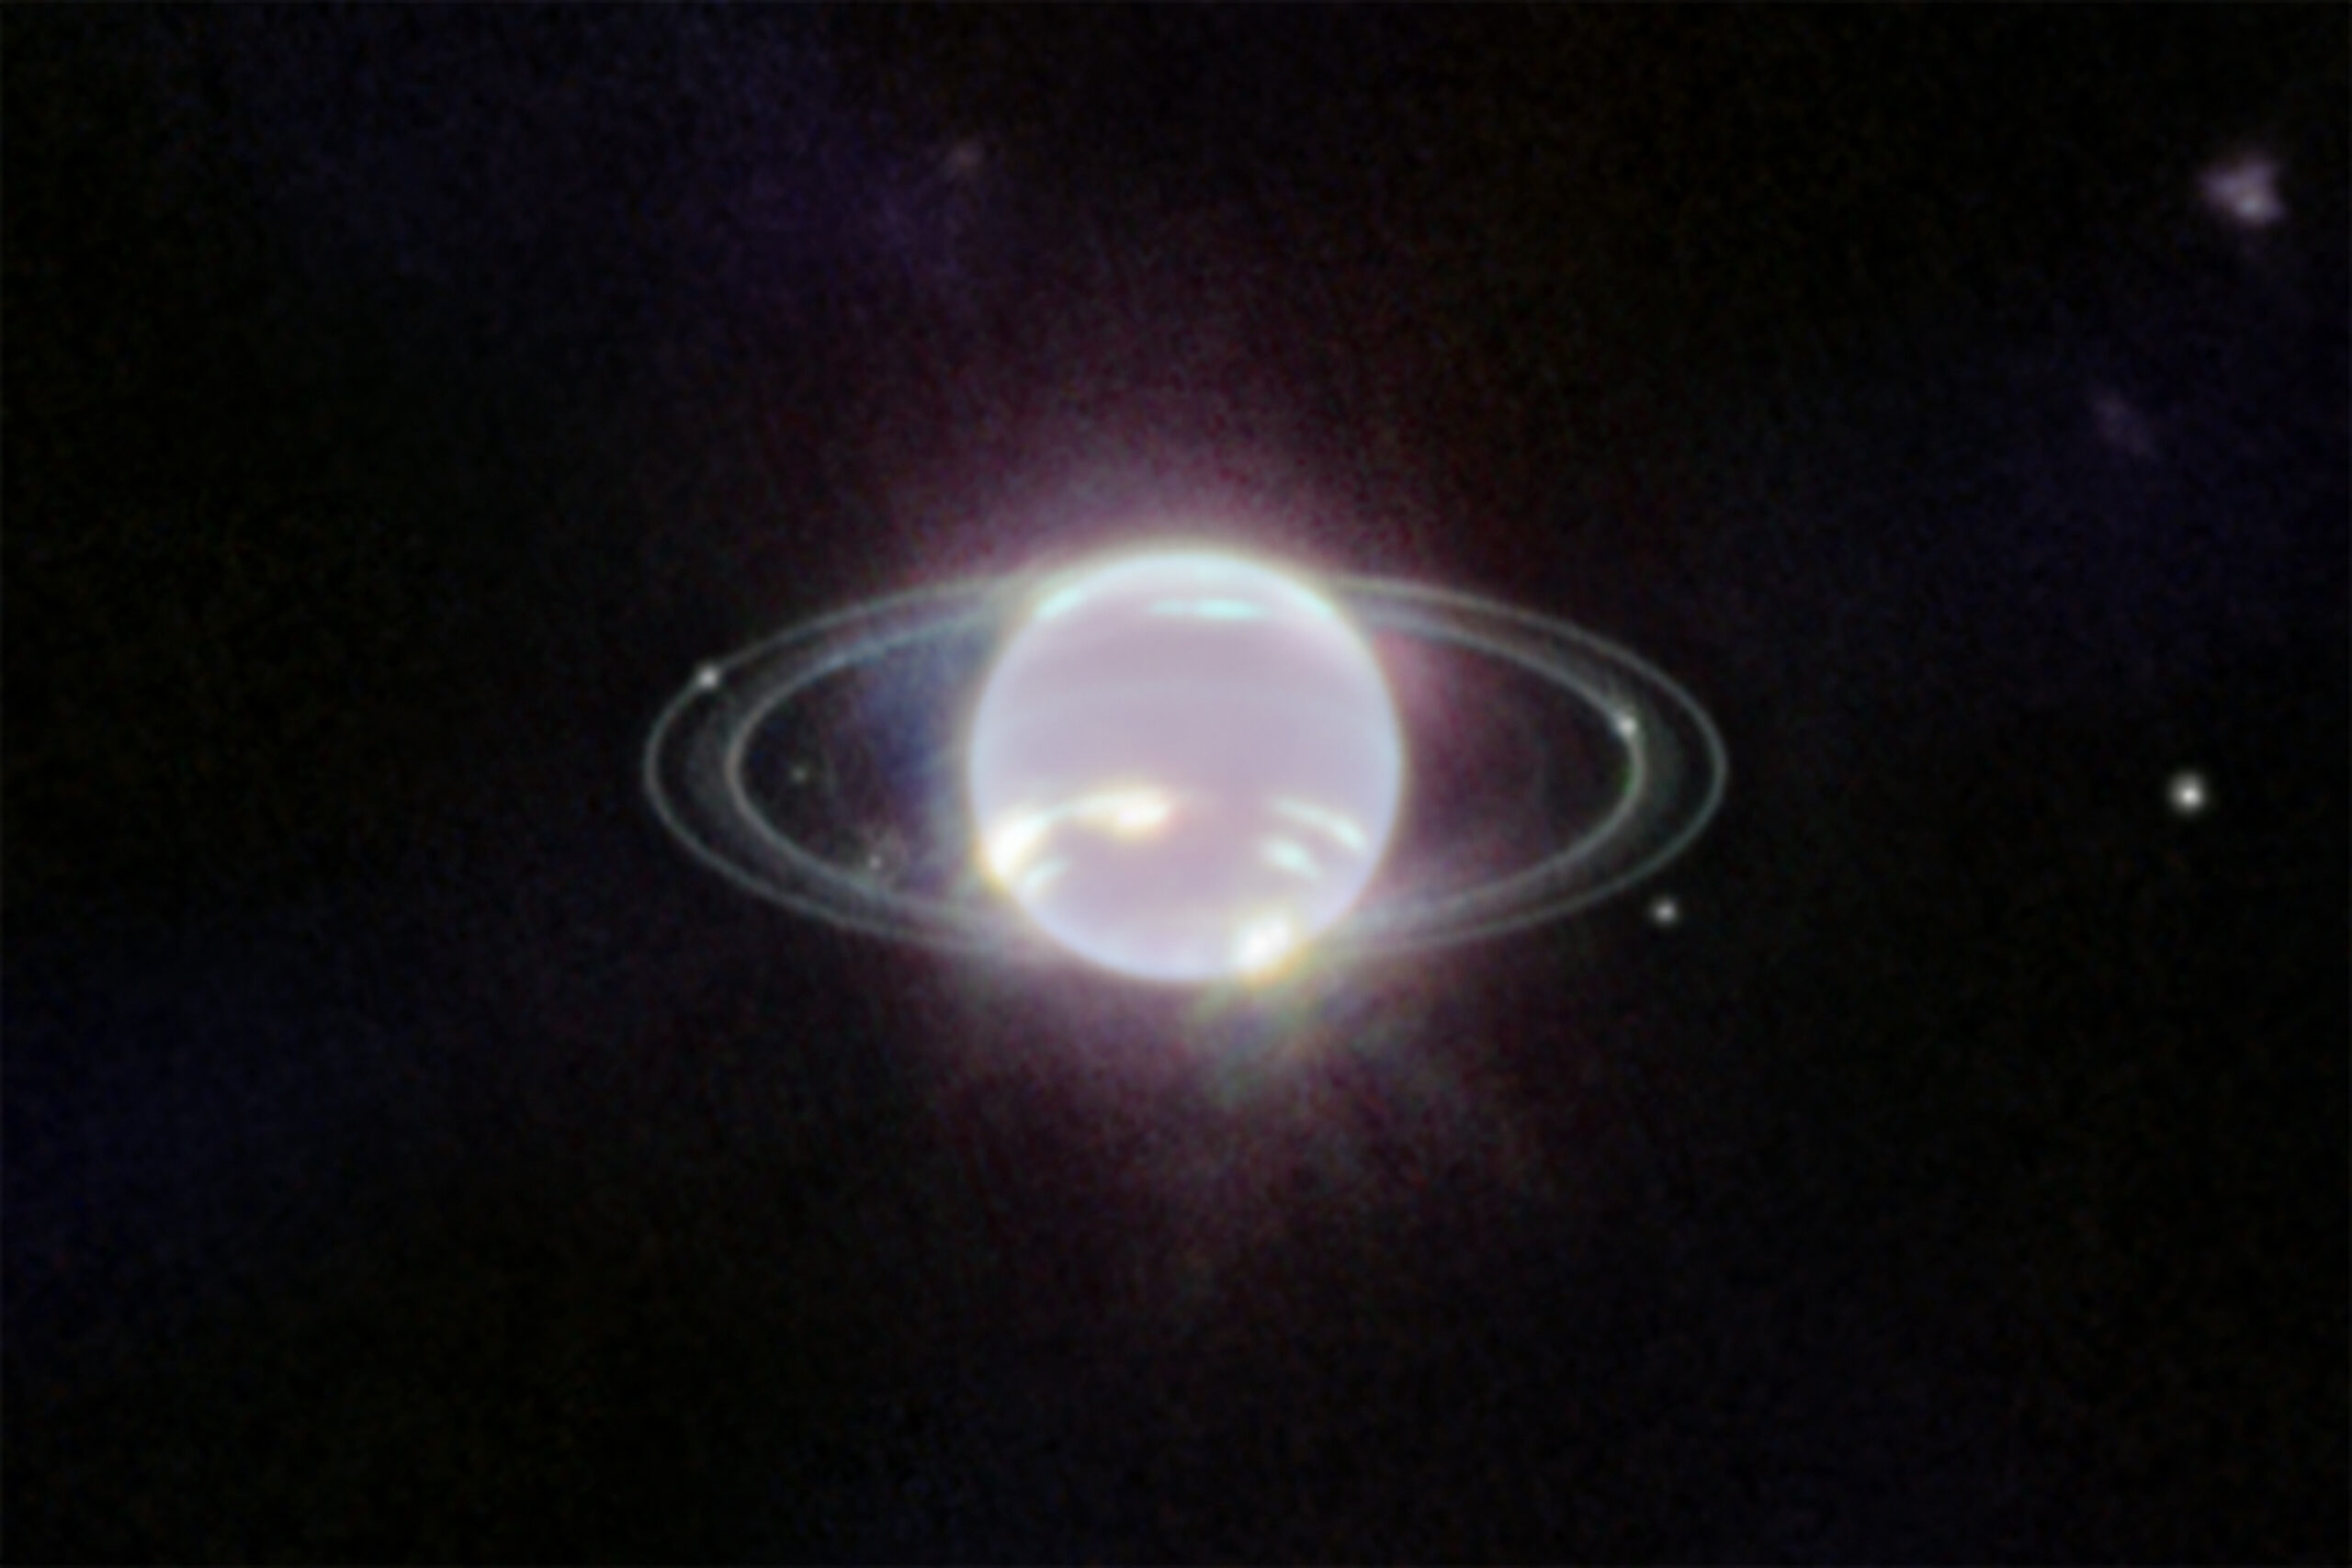 Bling, bling, Webb photographs Neptune’s rarely-seen rings